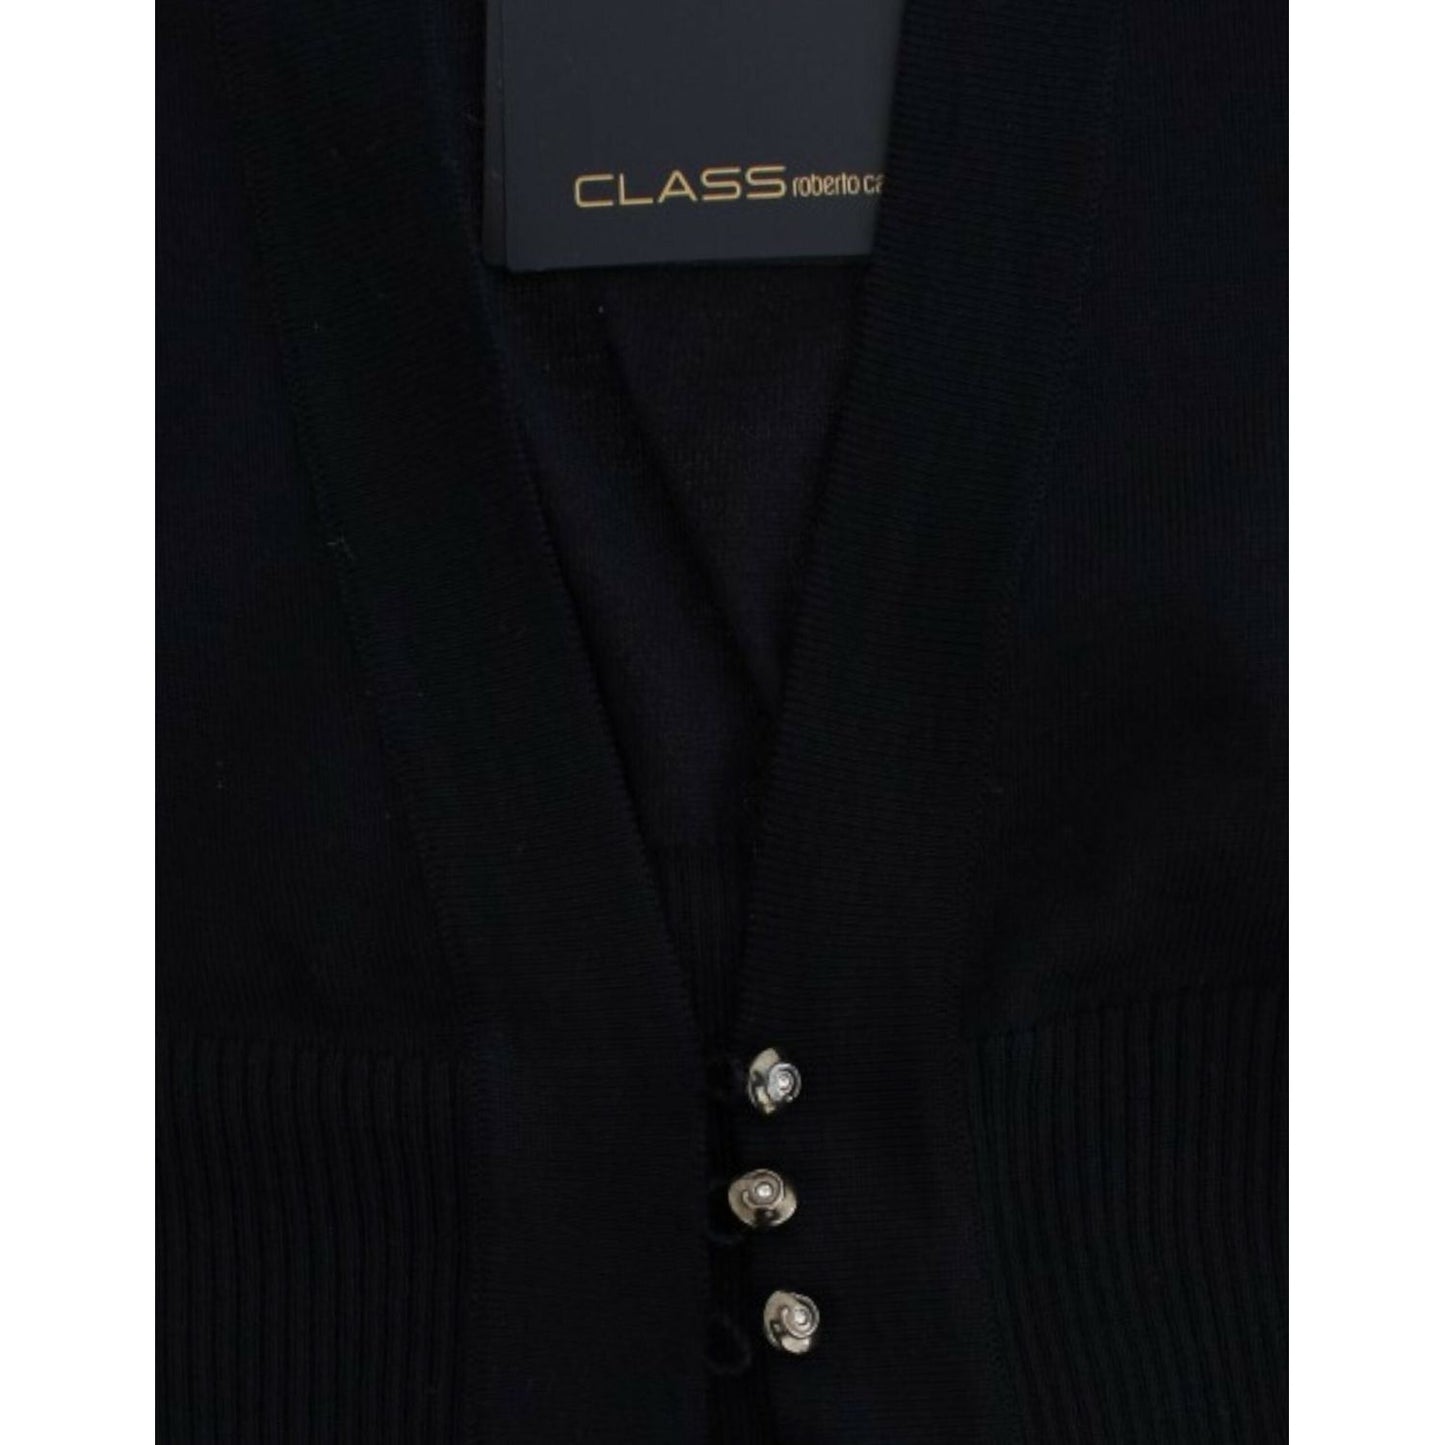 Cavalli Elegant Black Cropped Virgin Wool Cardigan black-cropped-wool-cardigan